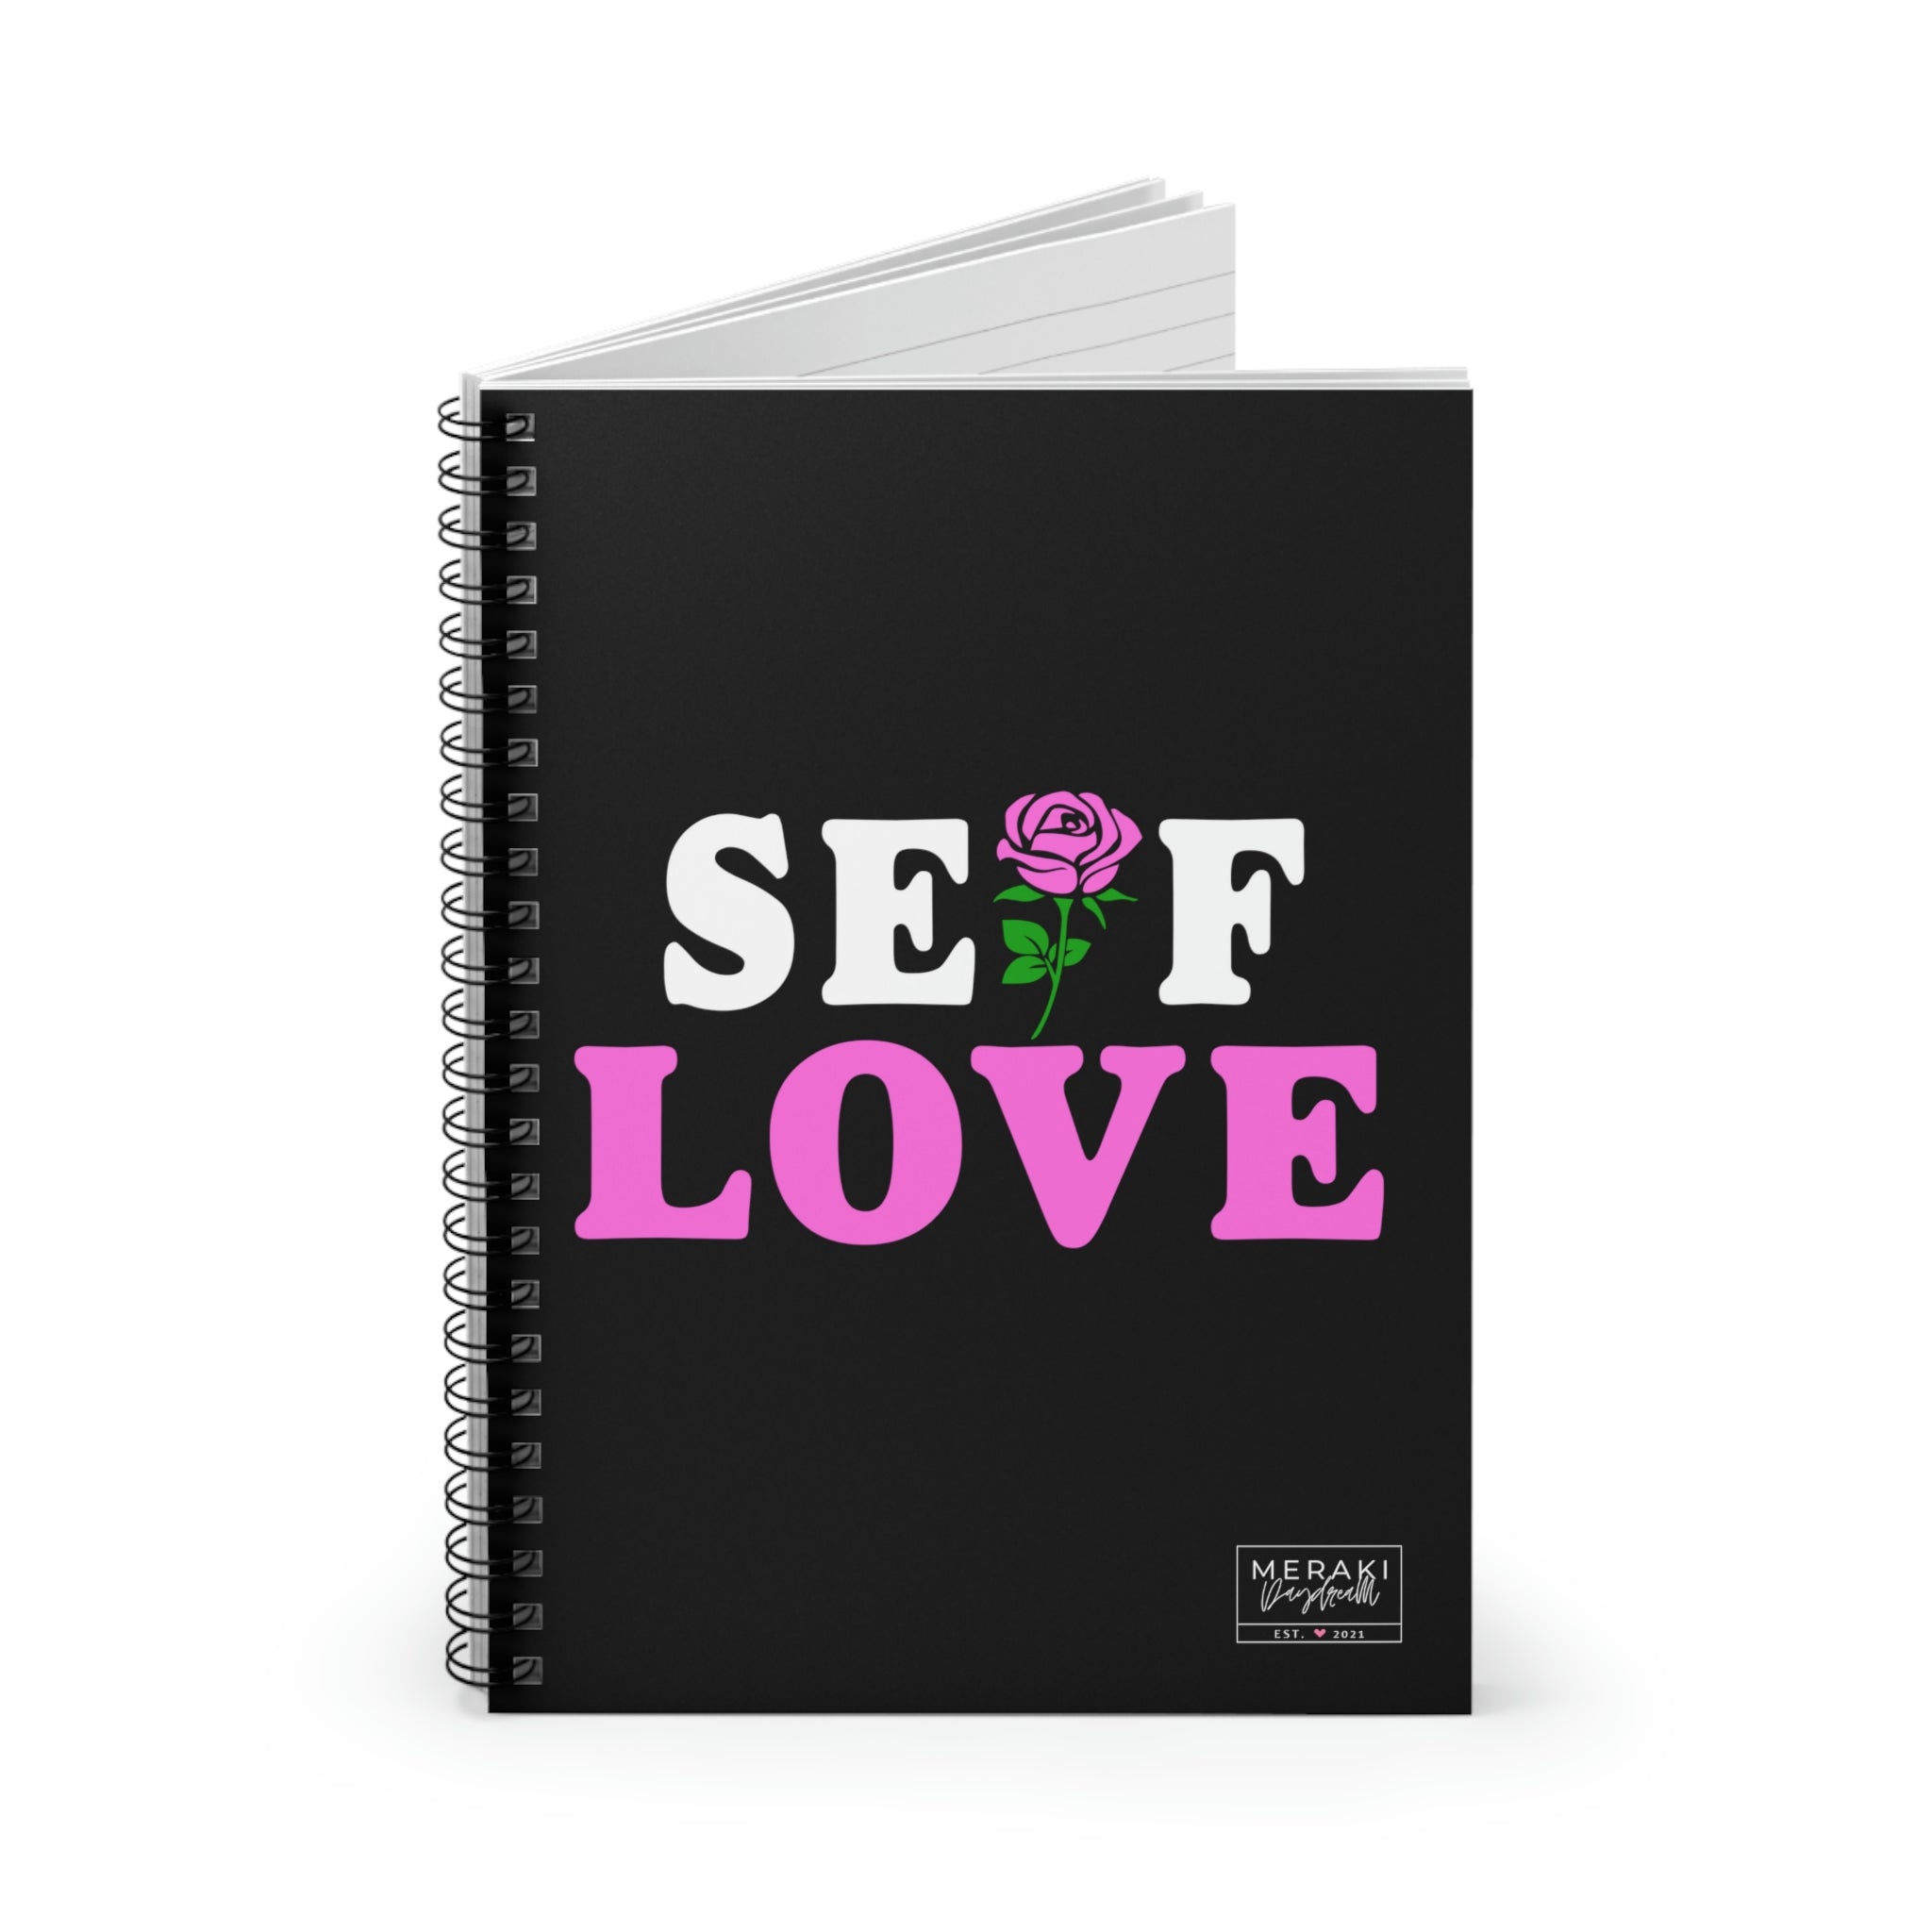 Self Love Journal - Meraki Daydream